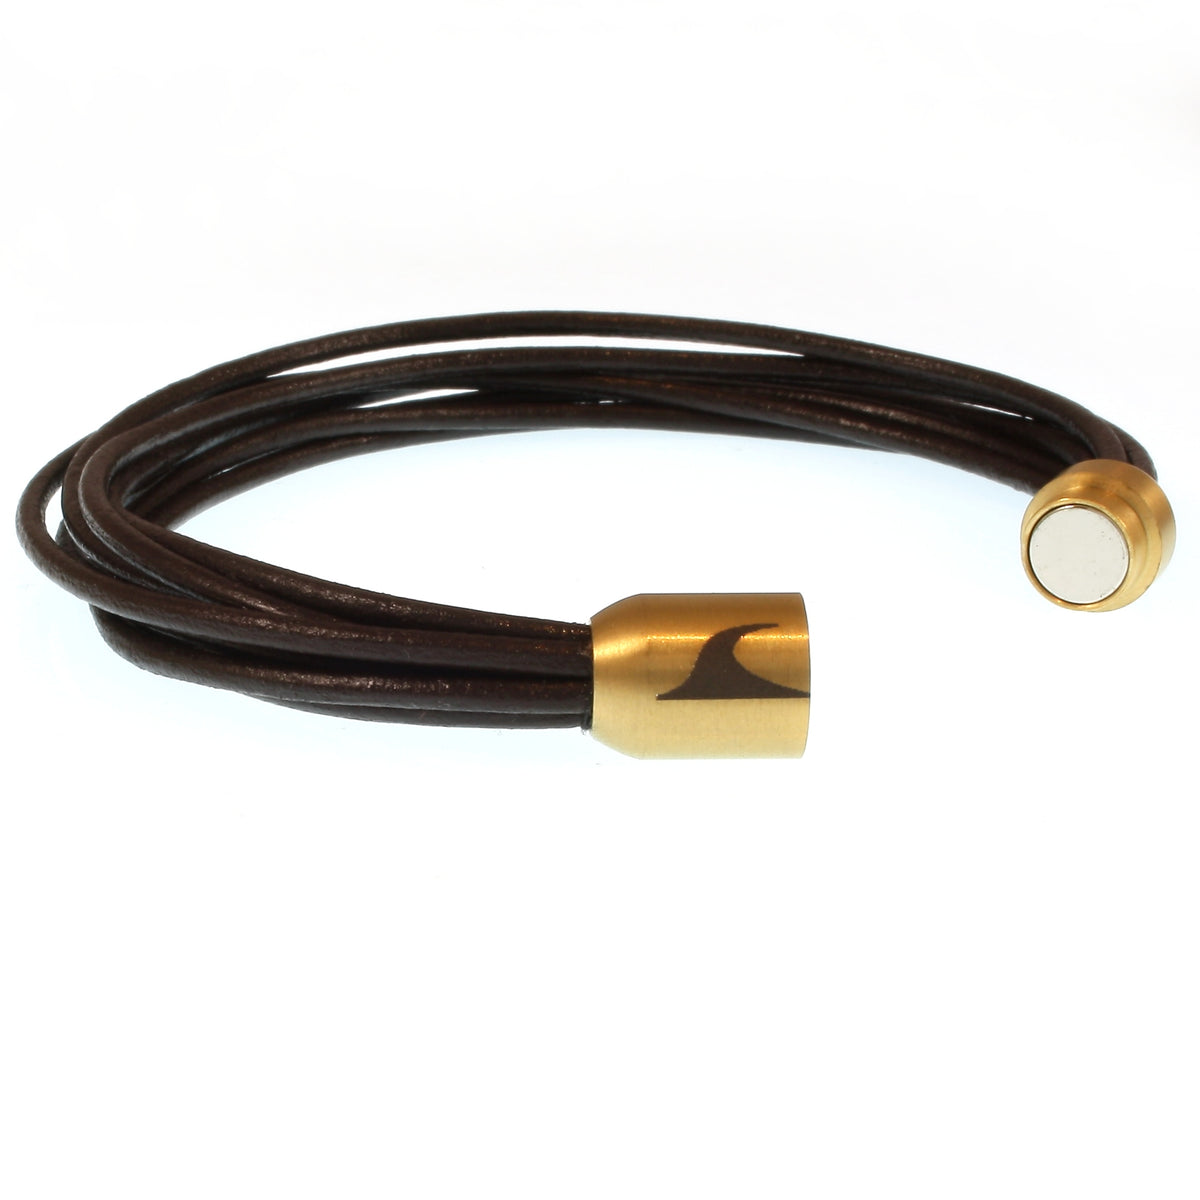 Damen-Leder-armband-fem-braun-gold-Edelstahlverschluss-offen-wavepirate-shop-r